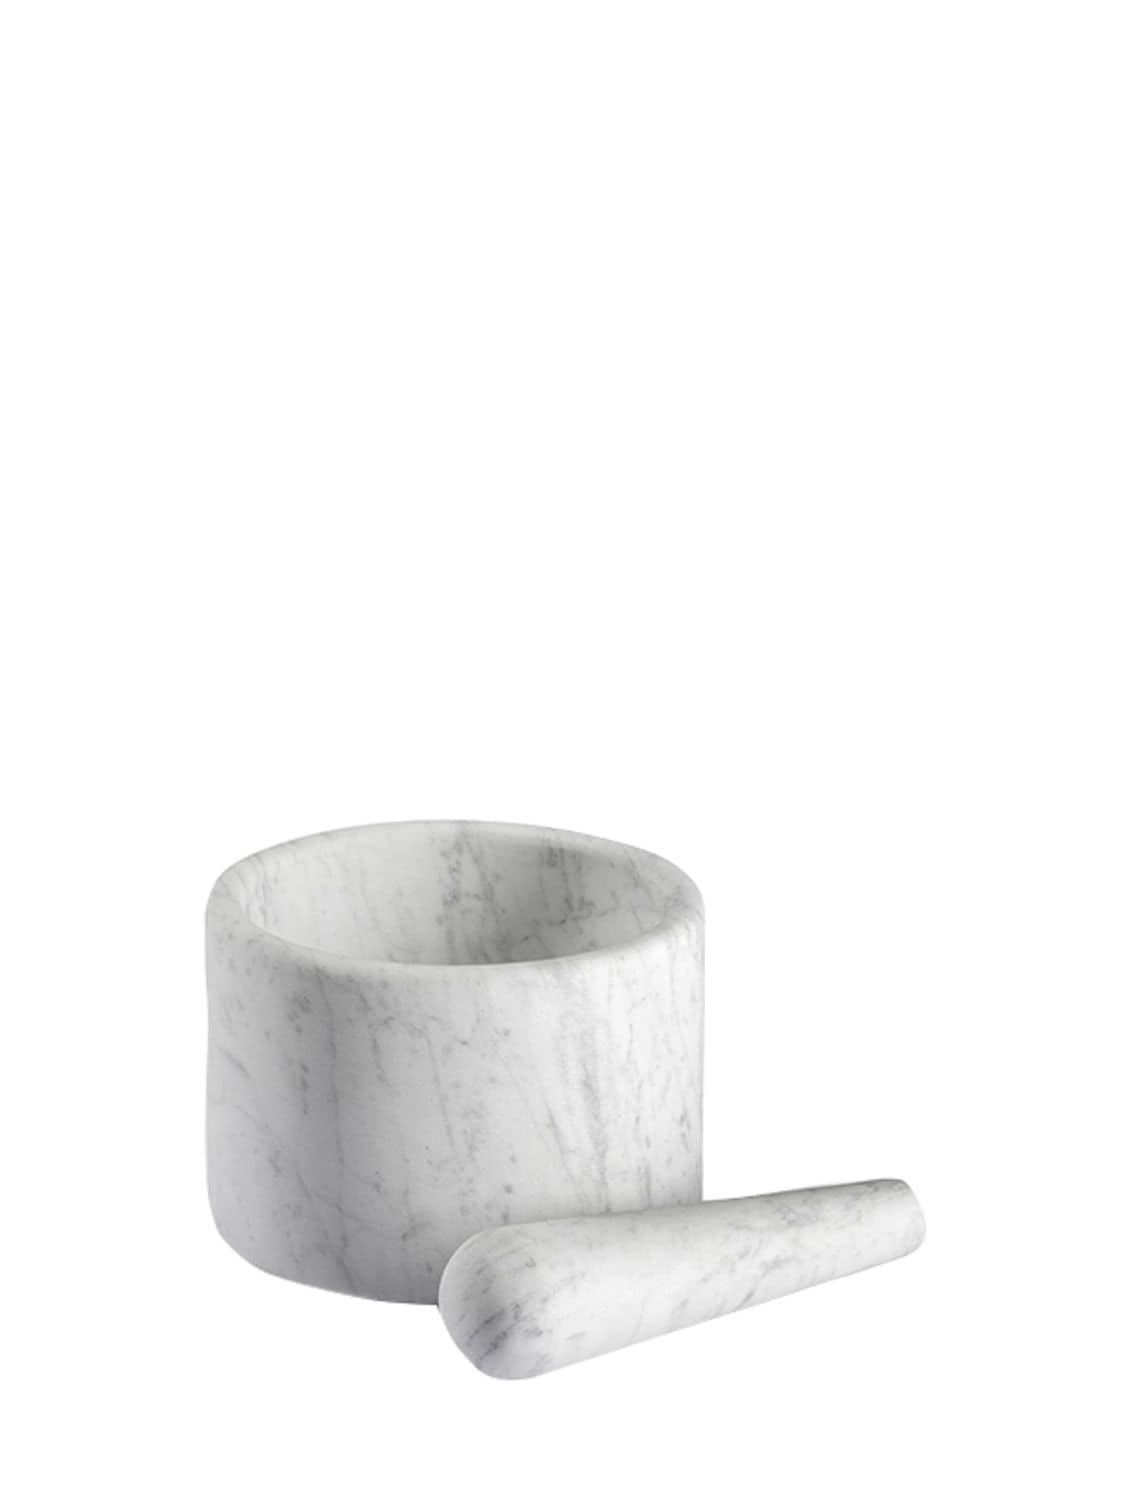 Salvatori Ellipse Marble Mortar & Pestle In White